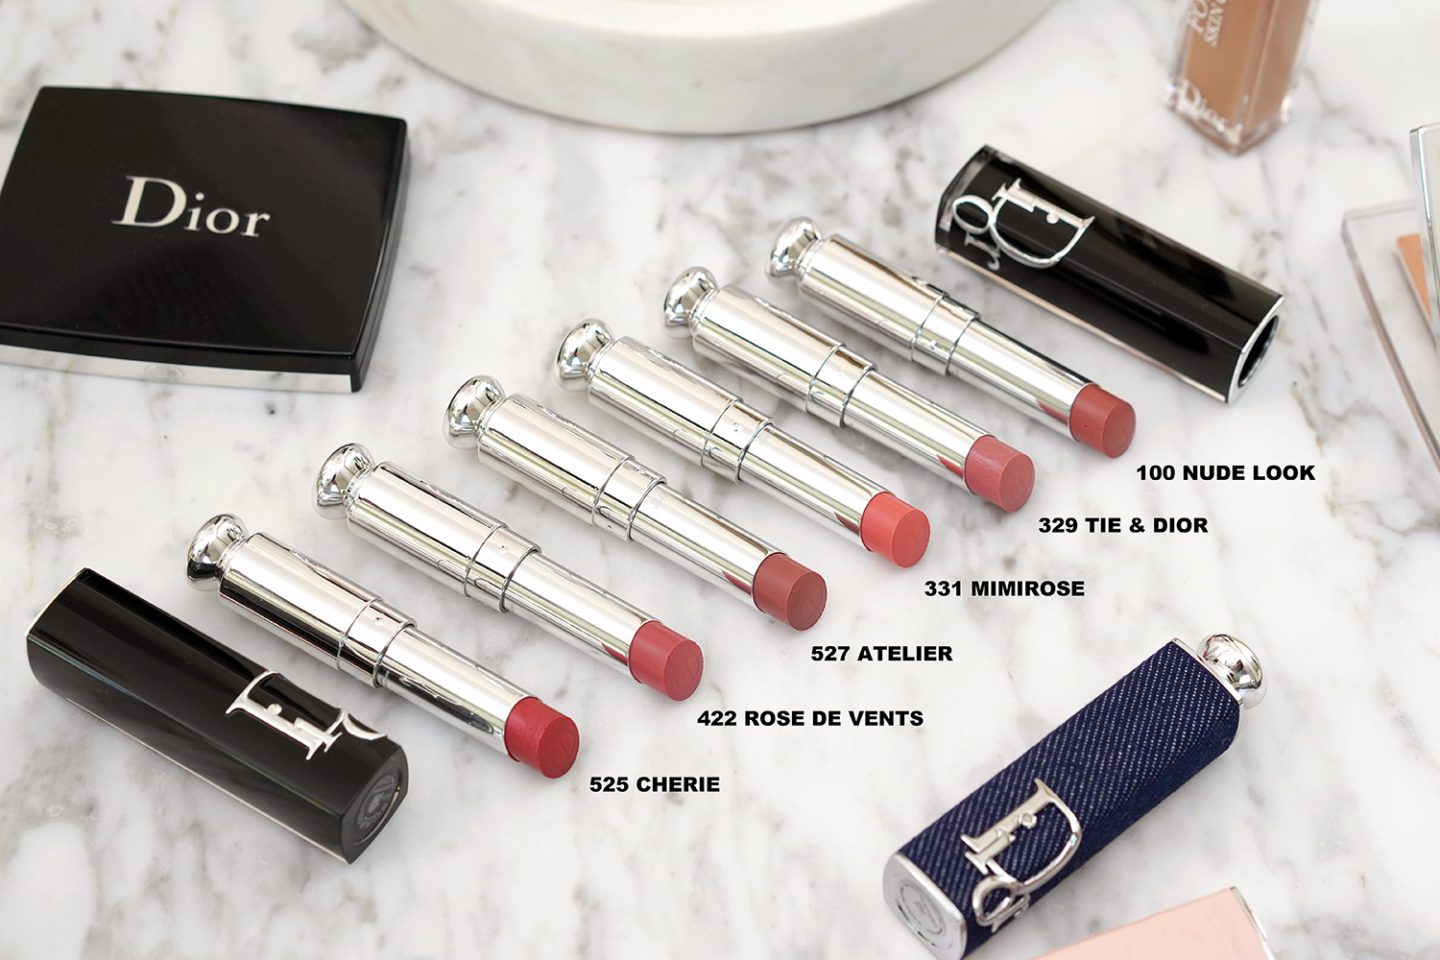 New Dior Addict Lipstick Review